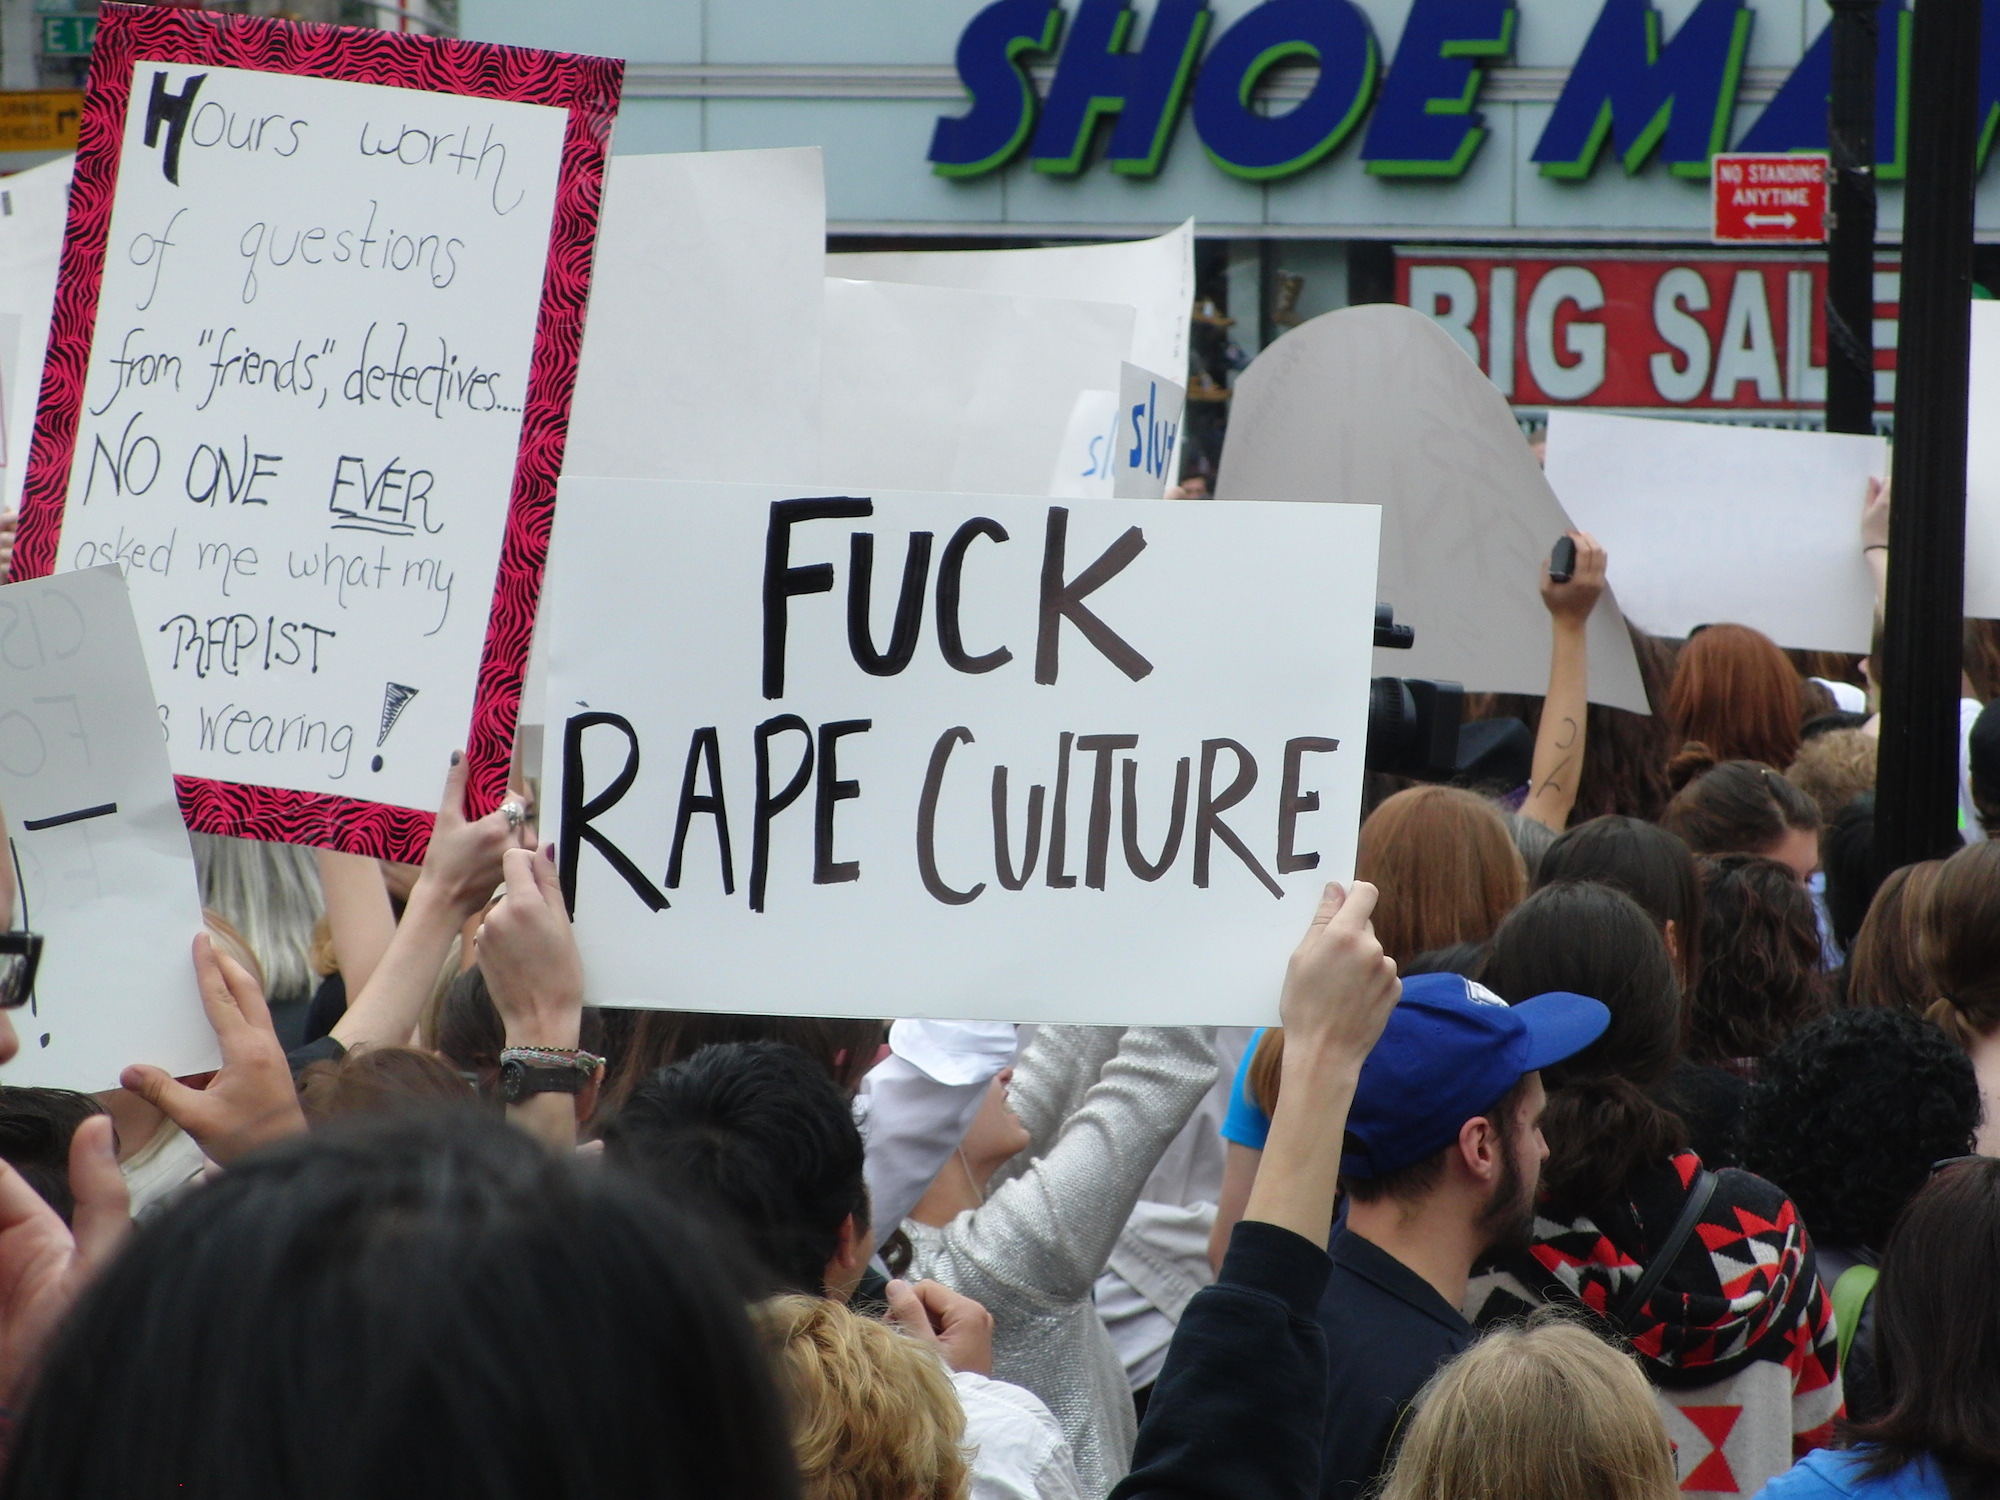 Fuck Rape Culture